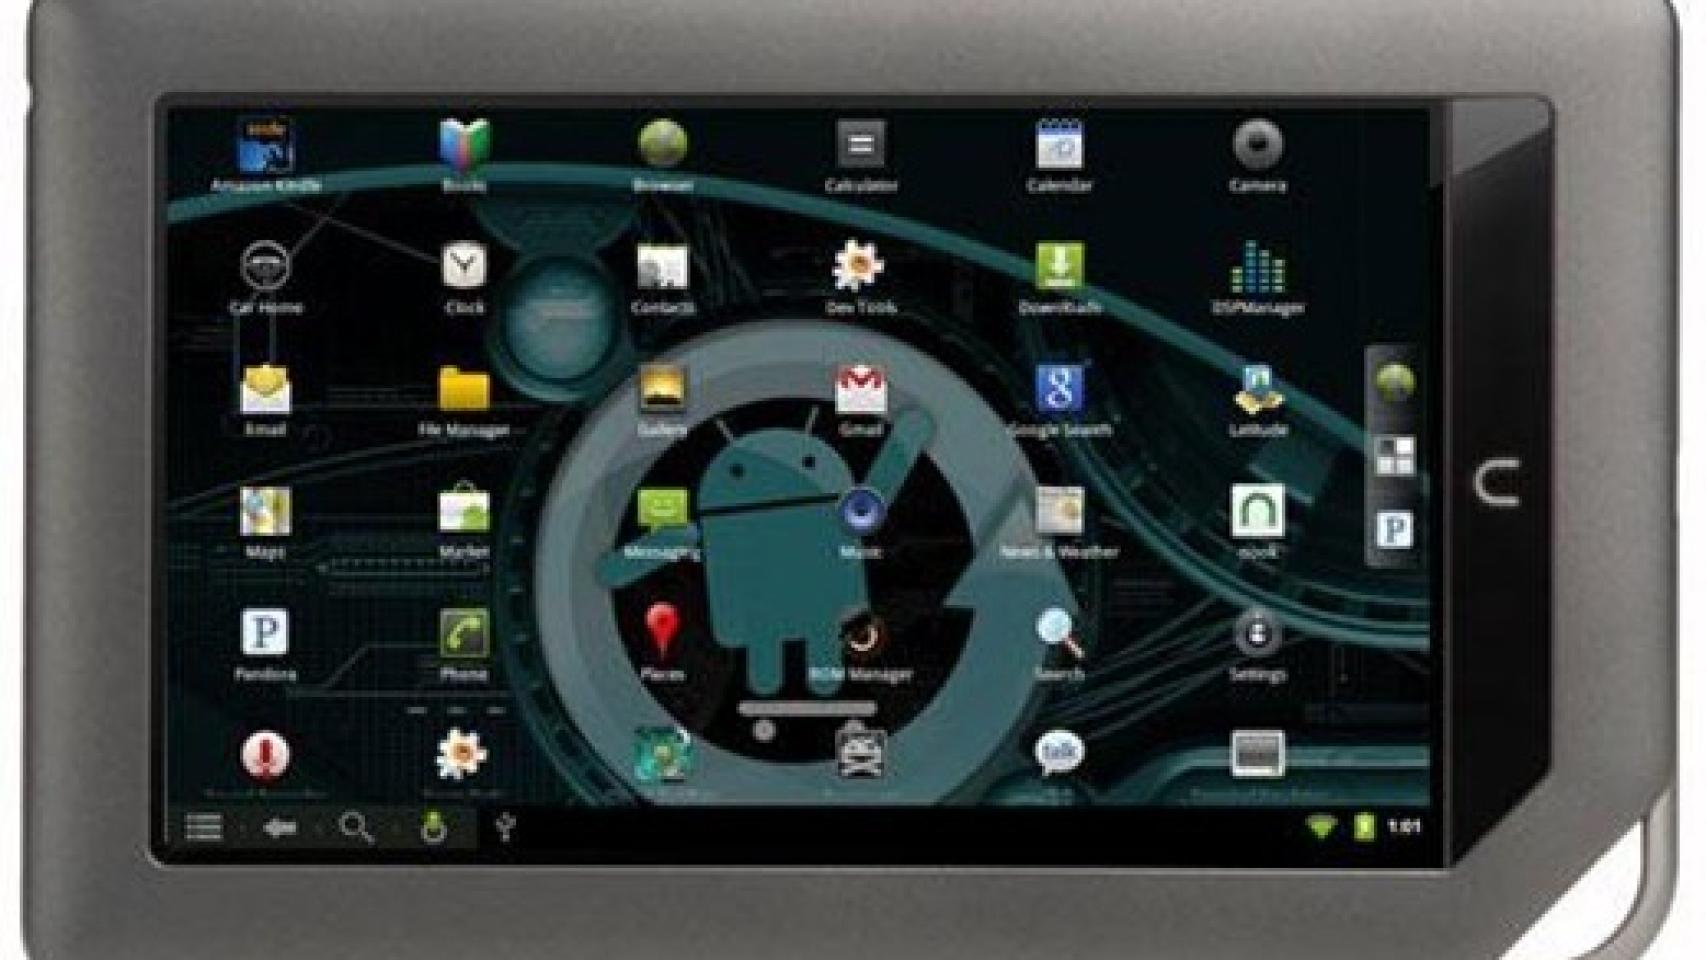 Aparece a la venta una tablet Nook Color con Cyanogen Mod de manera no oficial